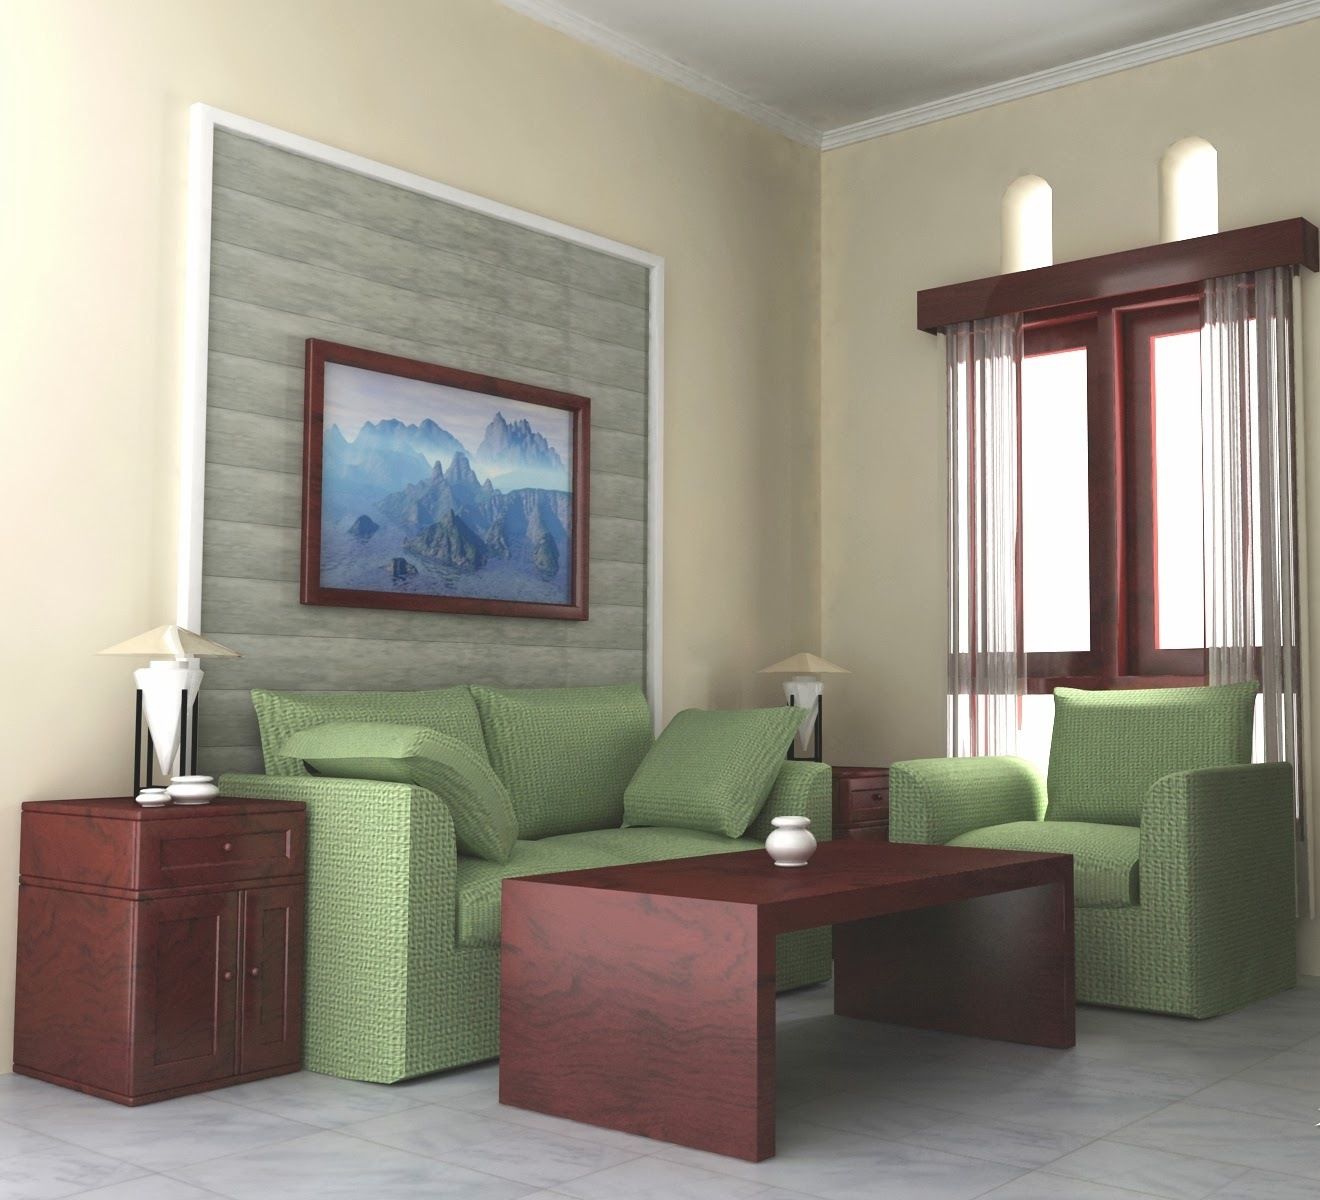 wallpaper ruang tamu elegan,living room,furniture,room,interior design,property